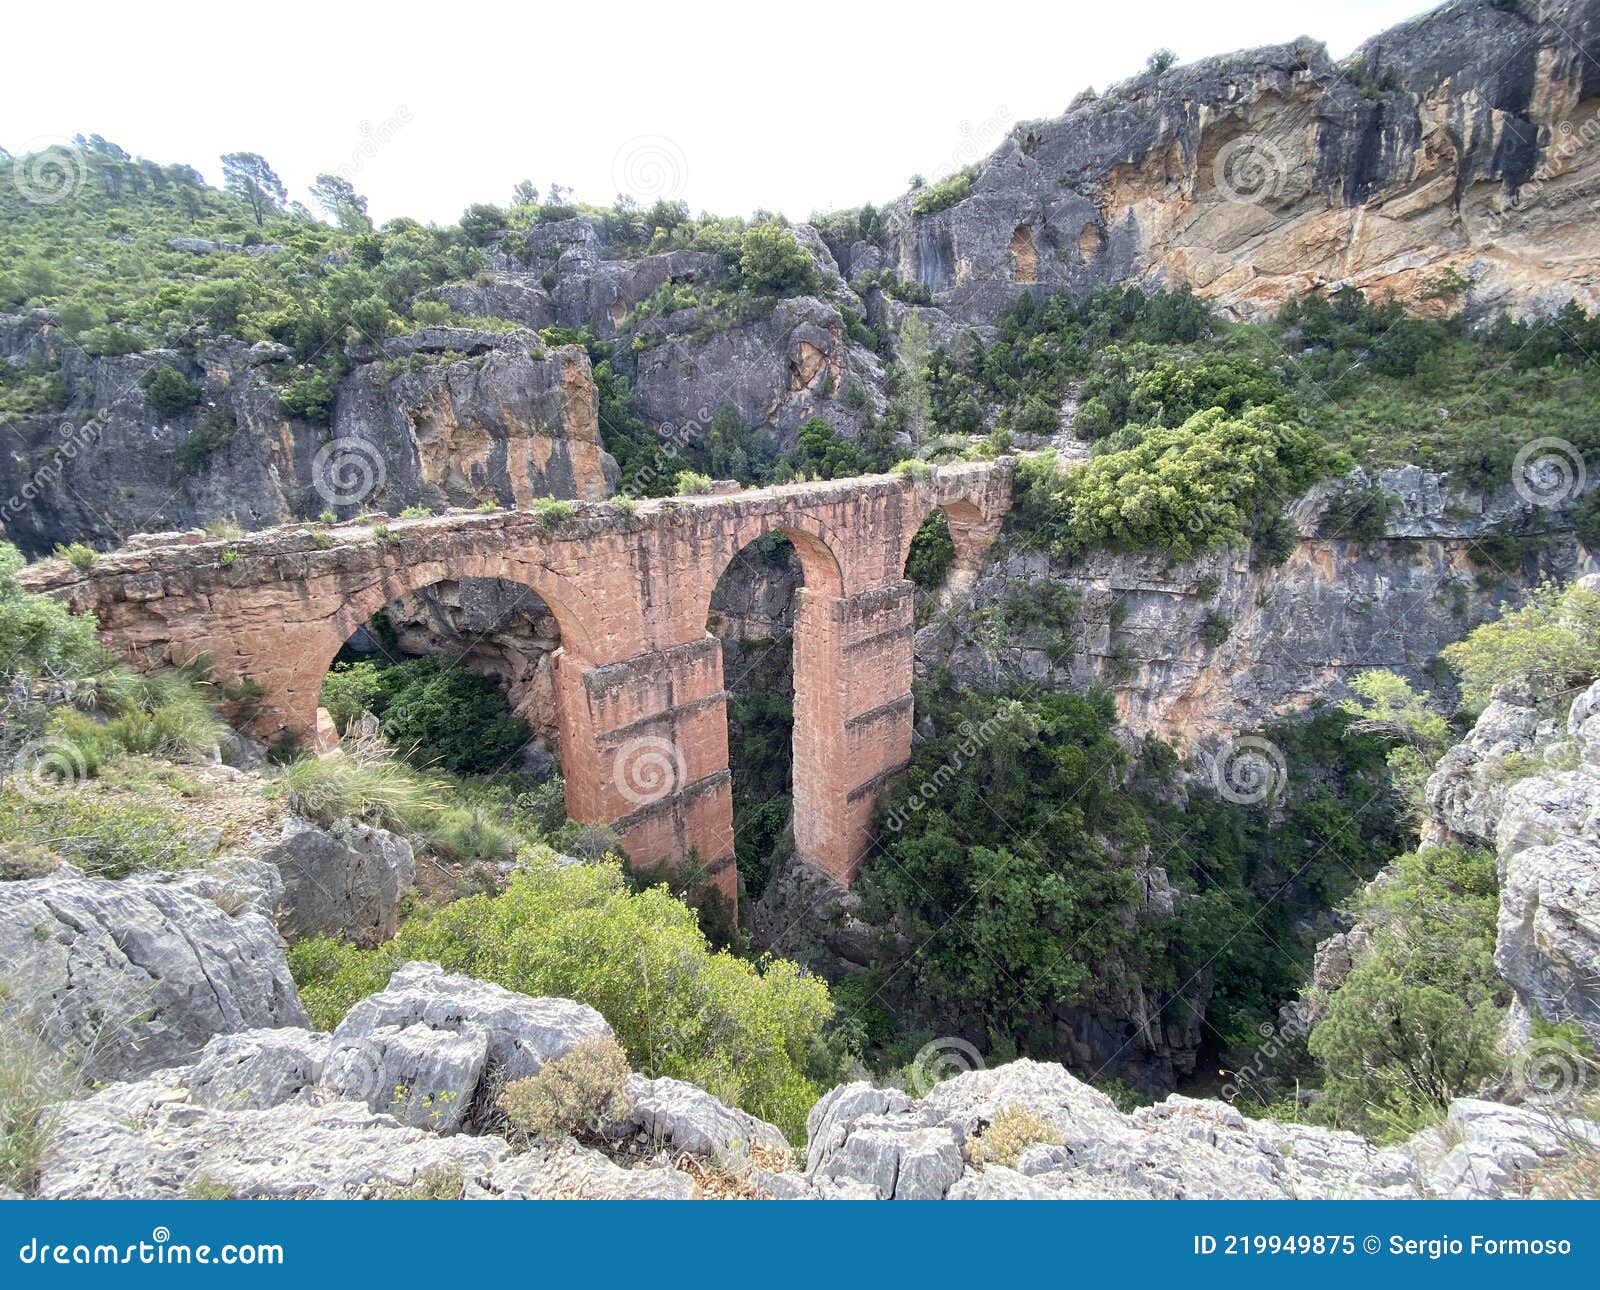 roman aqueduct in valencia, spain